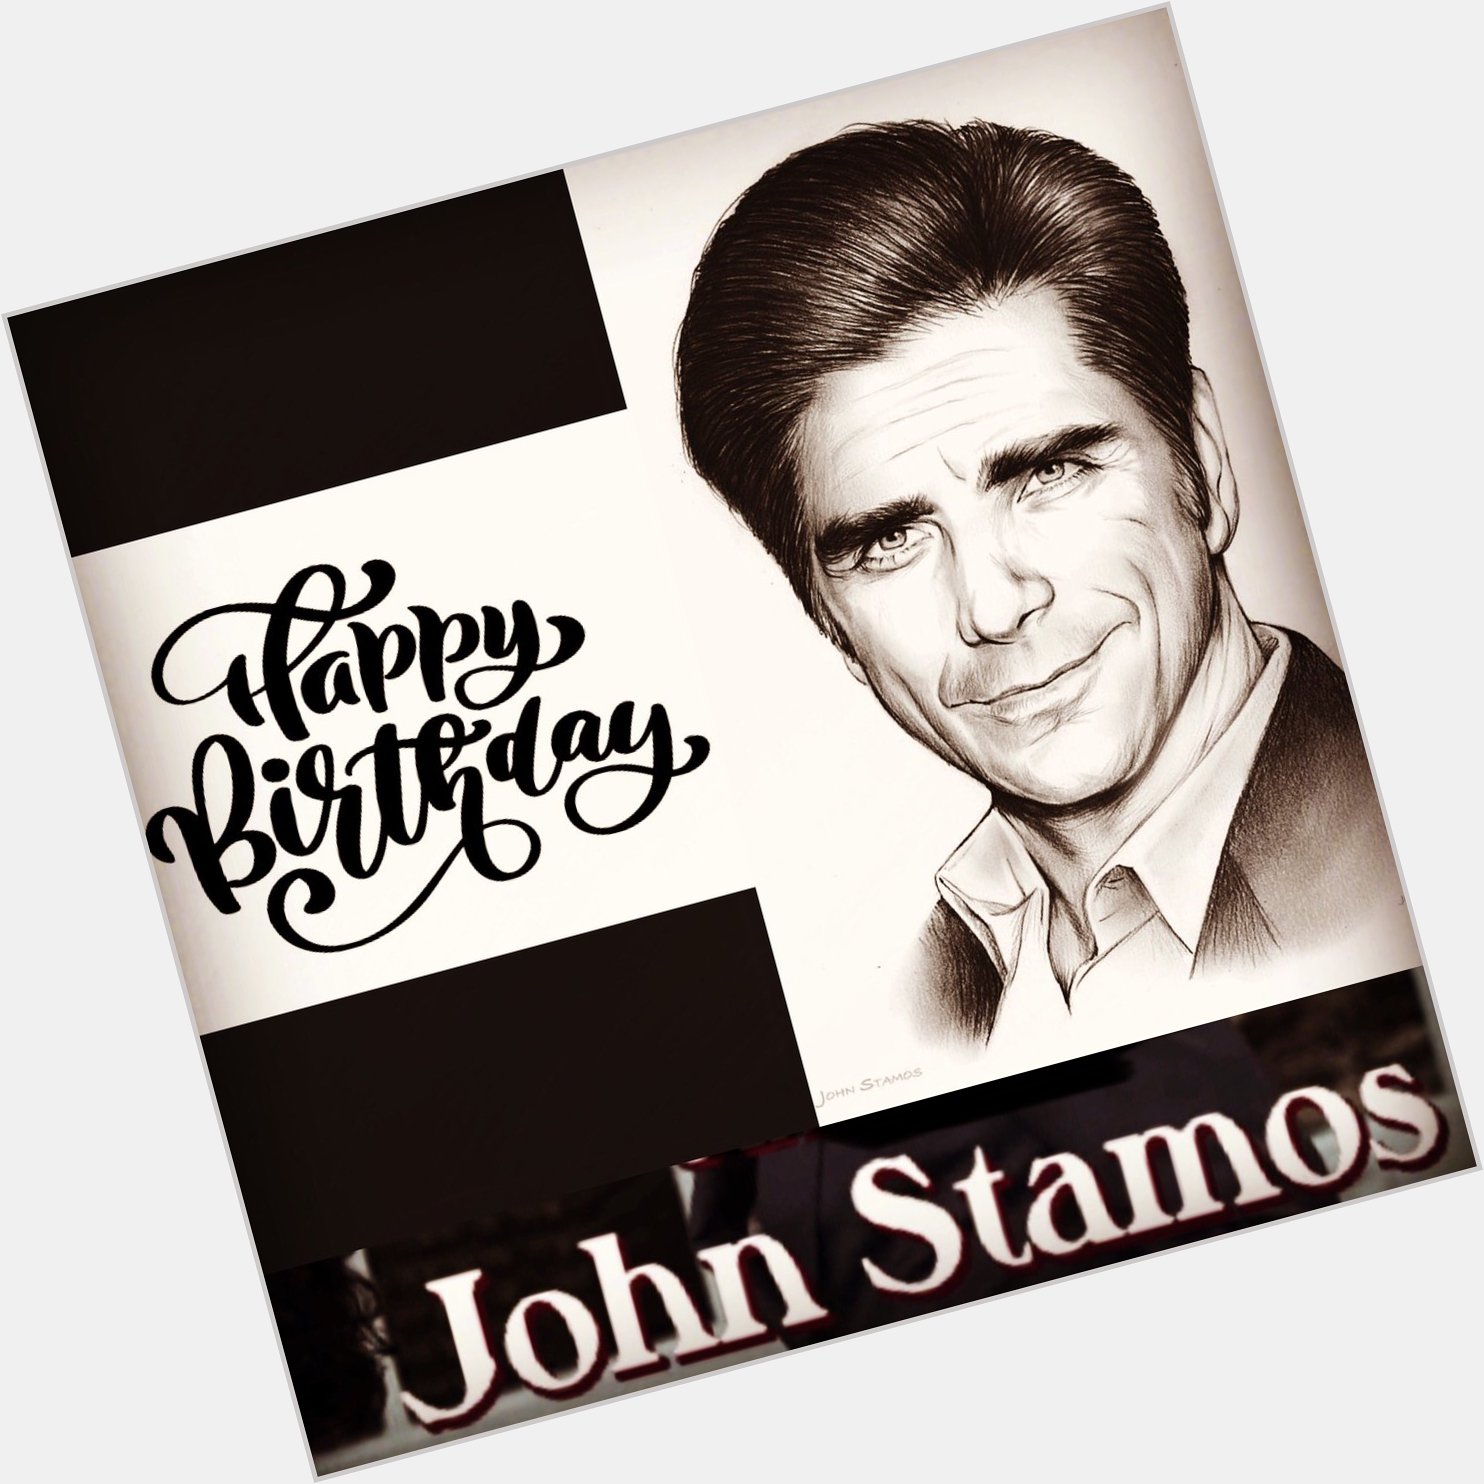 Happy birthday John Stamos 